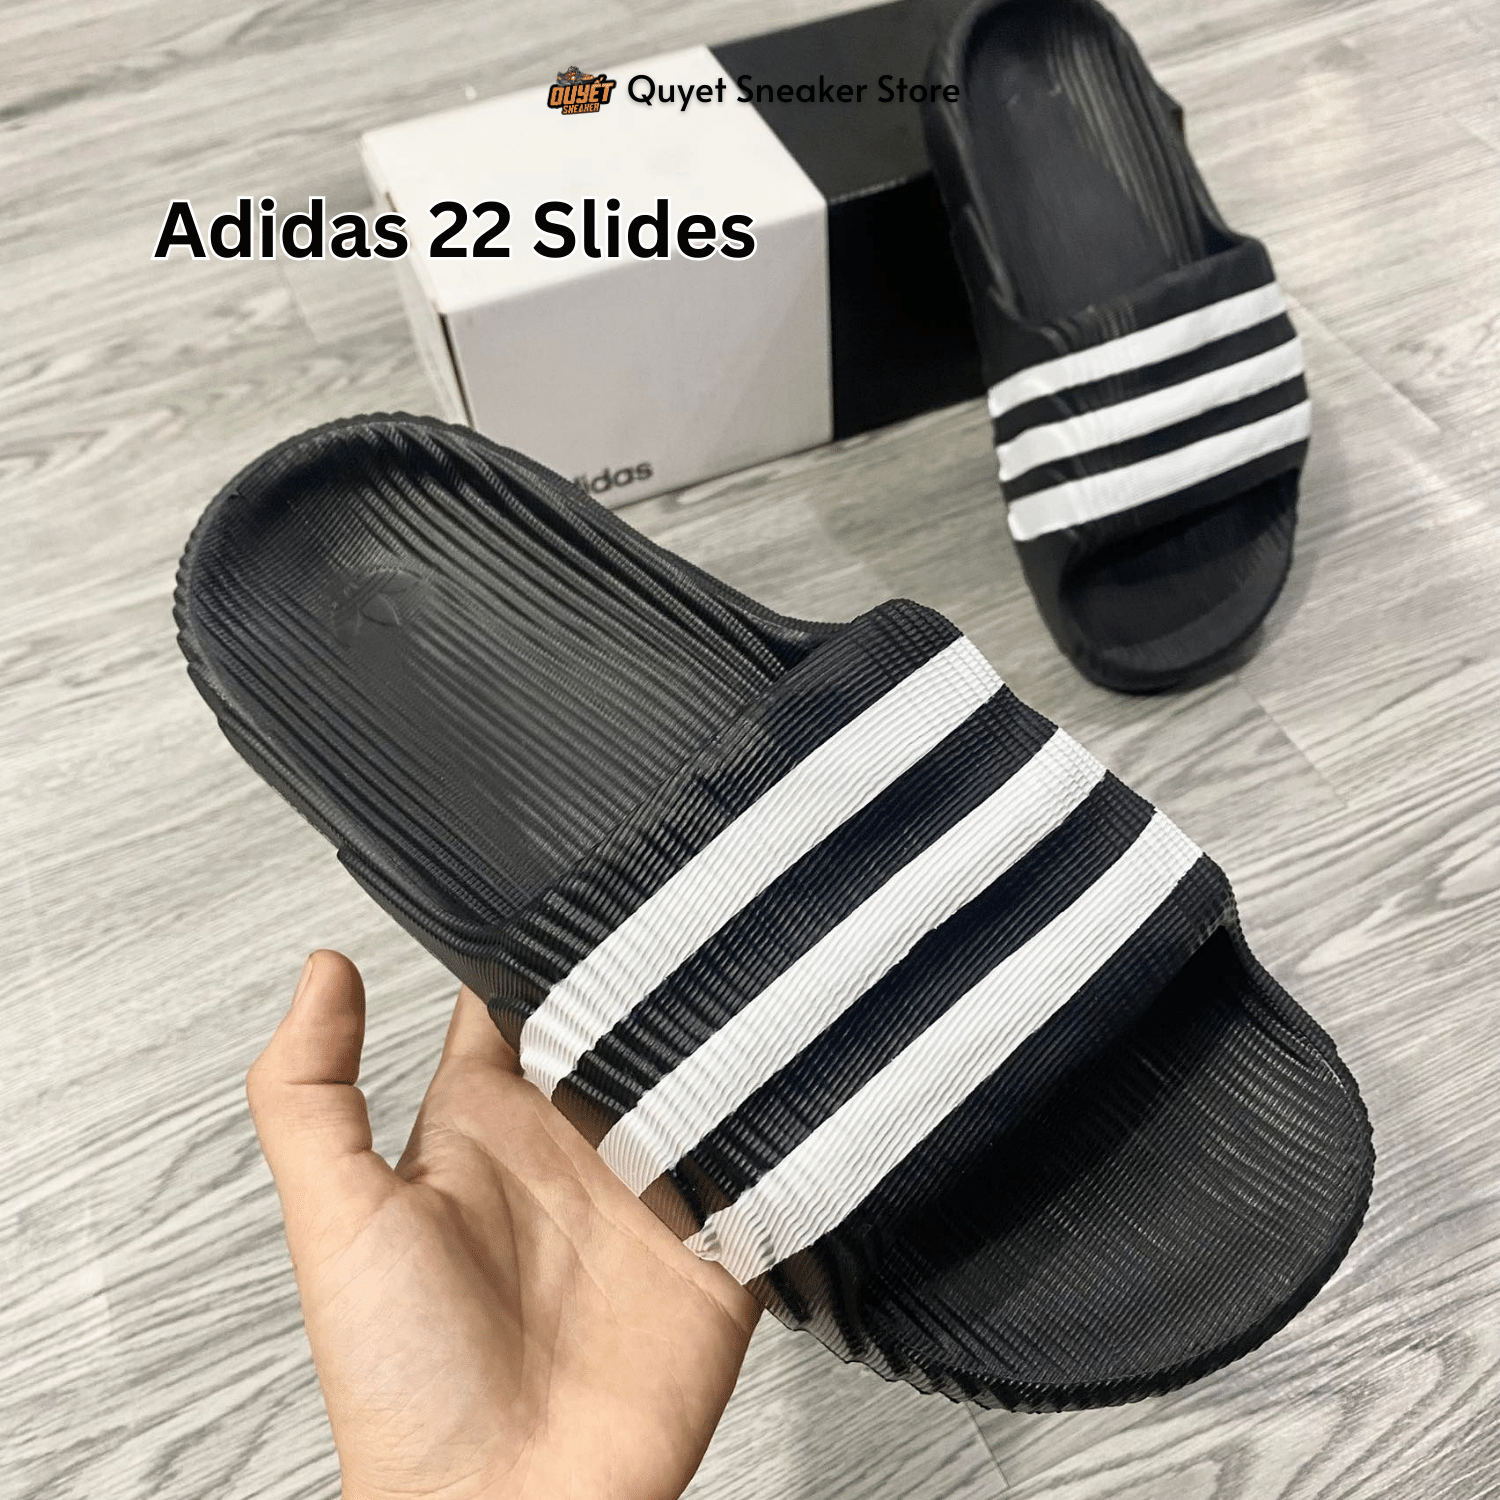 Dép Chính Hãng - Adidas Adilette 22 Slides Black/White - HQ1605